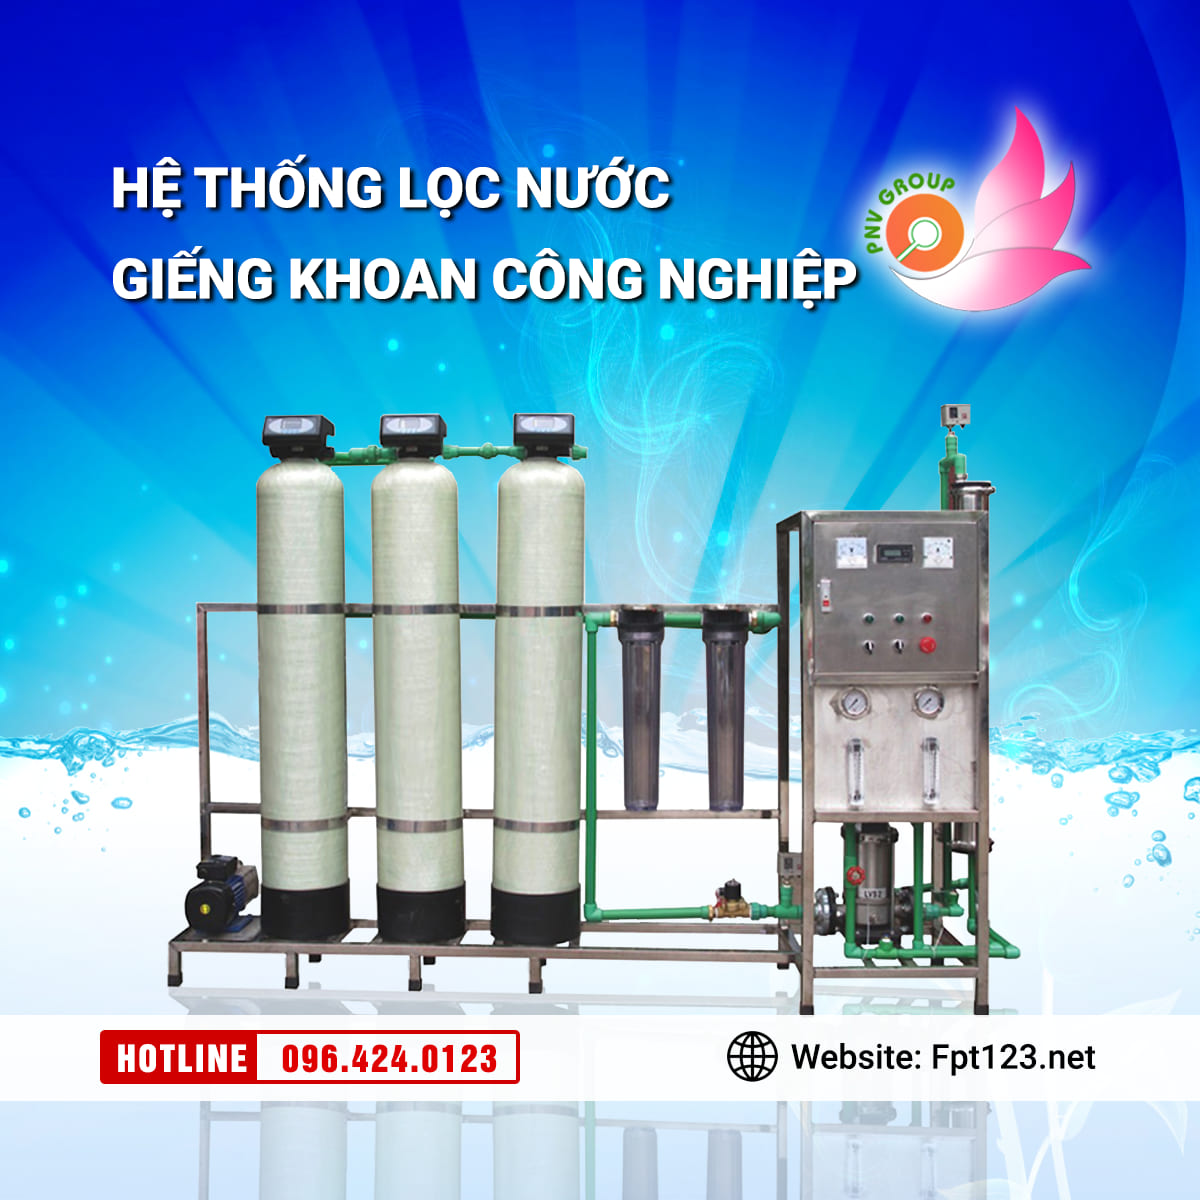 Hệ thống lọc nước công nghiệp huyện Thuận Thành, Bắc Ninh